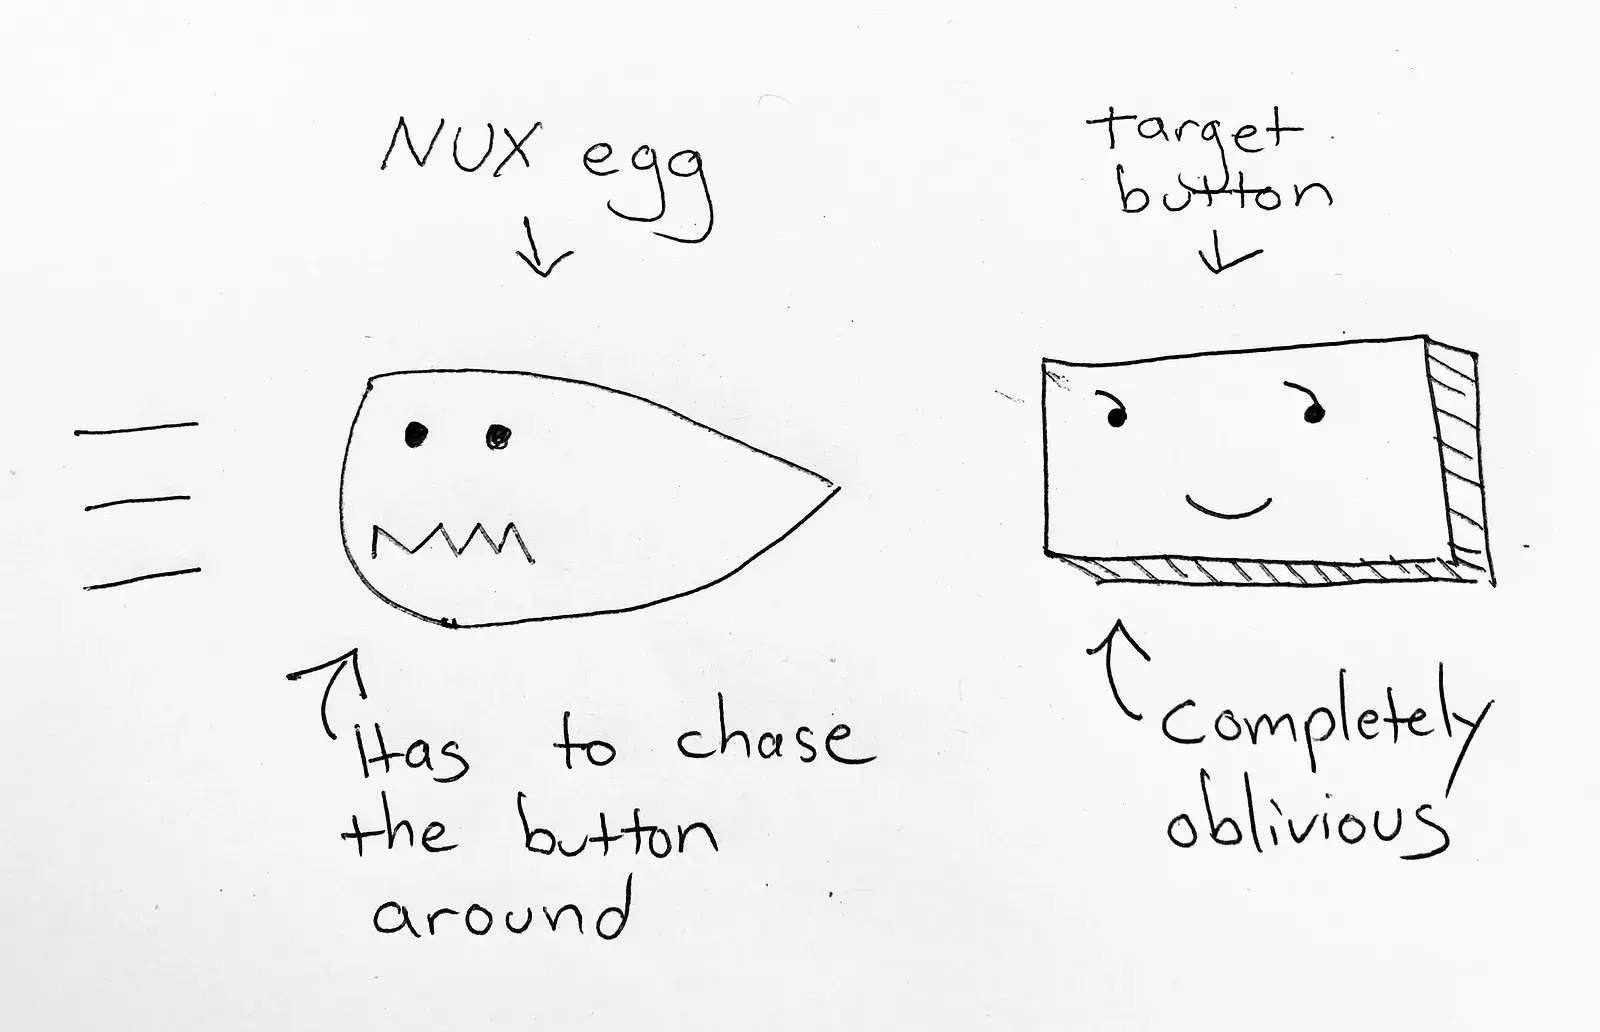 [IA Blog] Architecting - nux egg (Image 3)